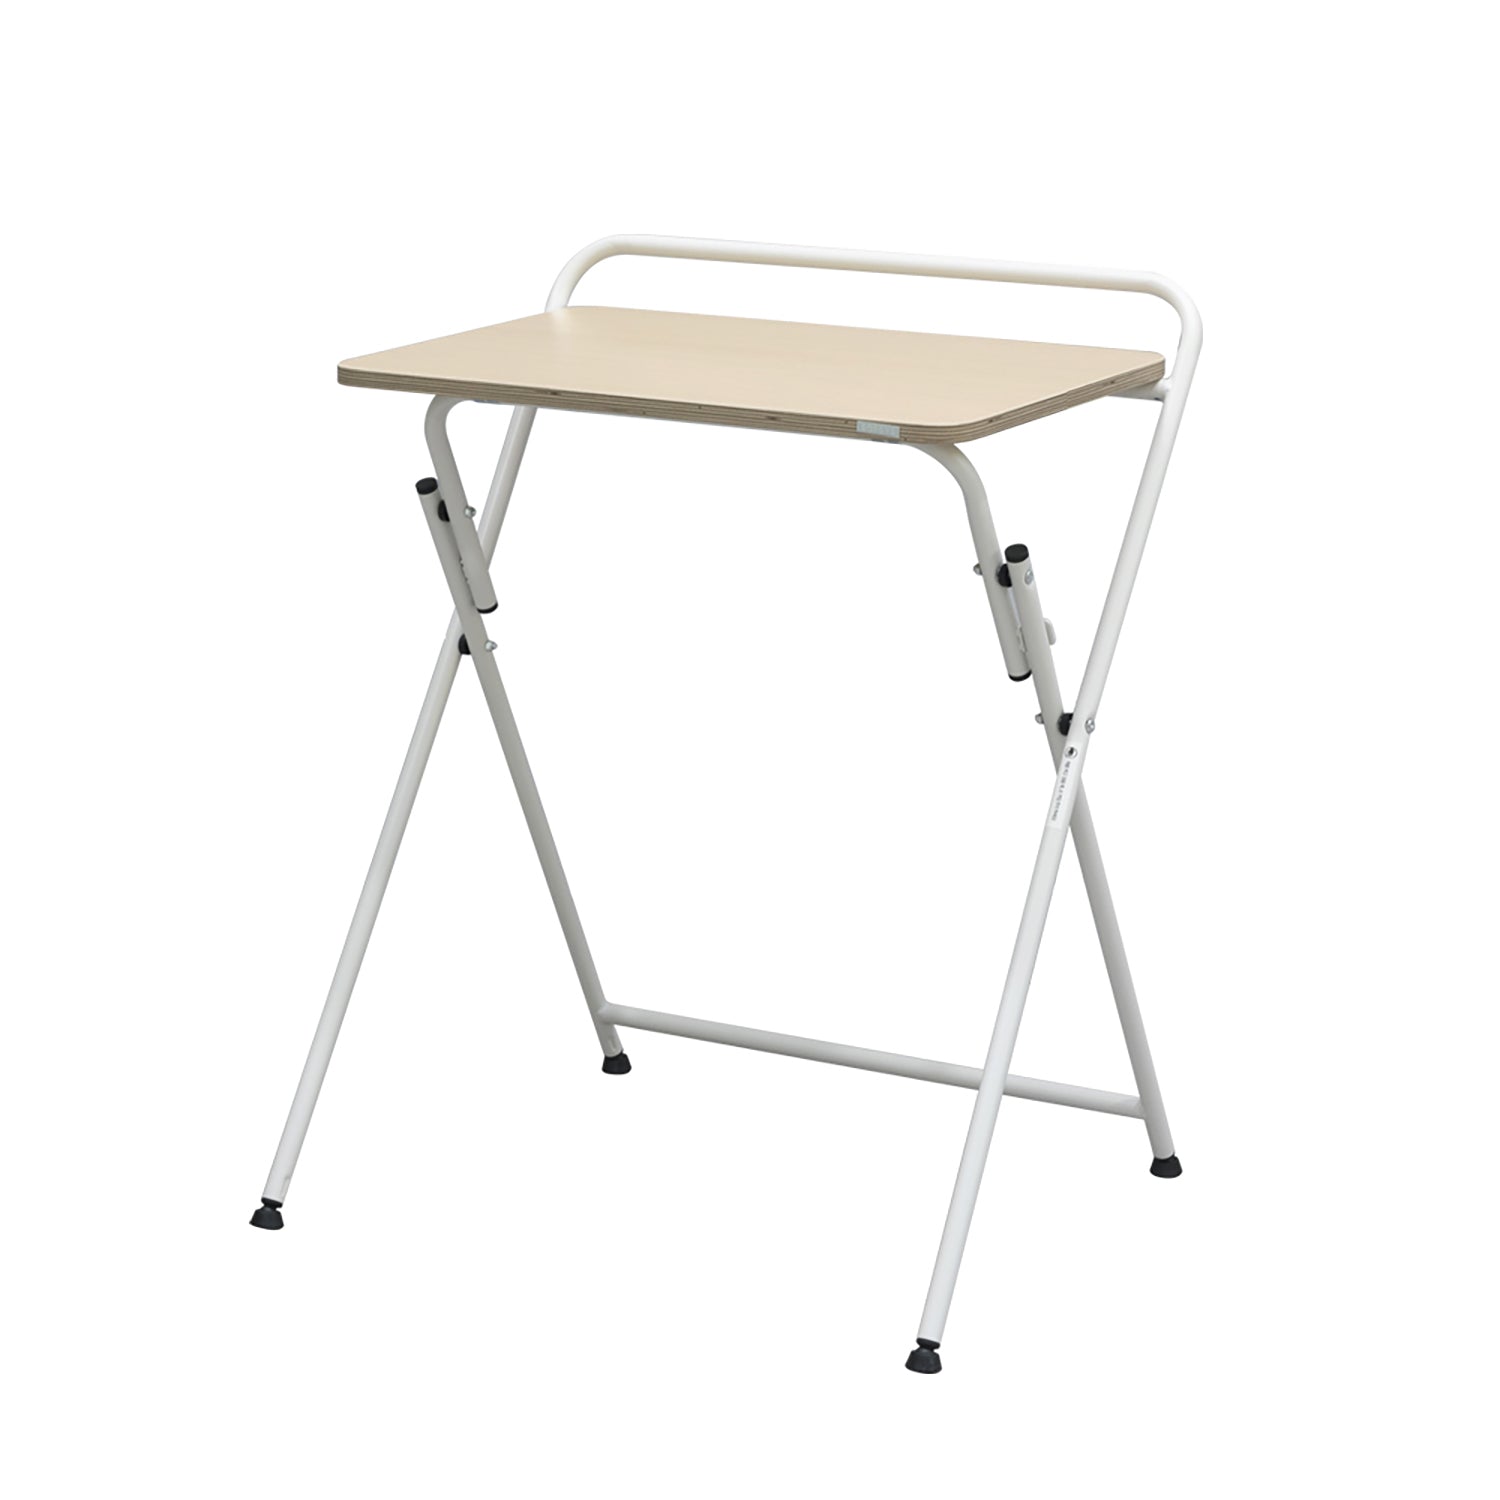 Modern Folding Desk 647, One-Tier